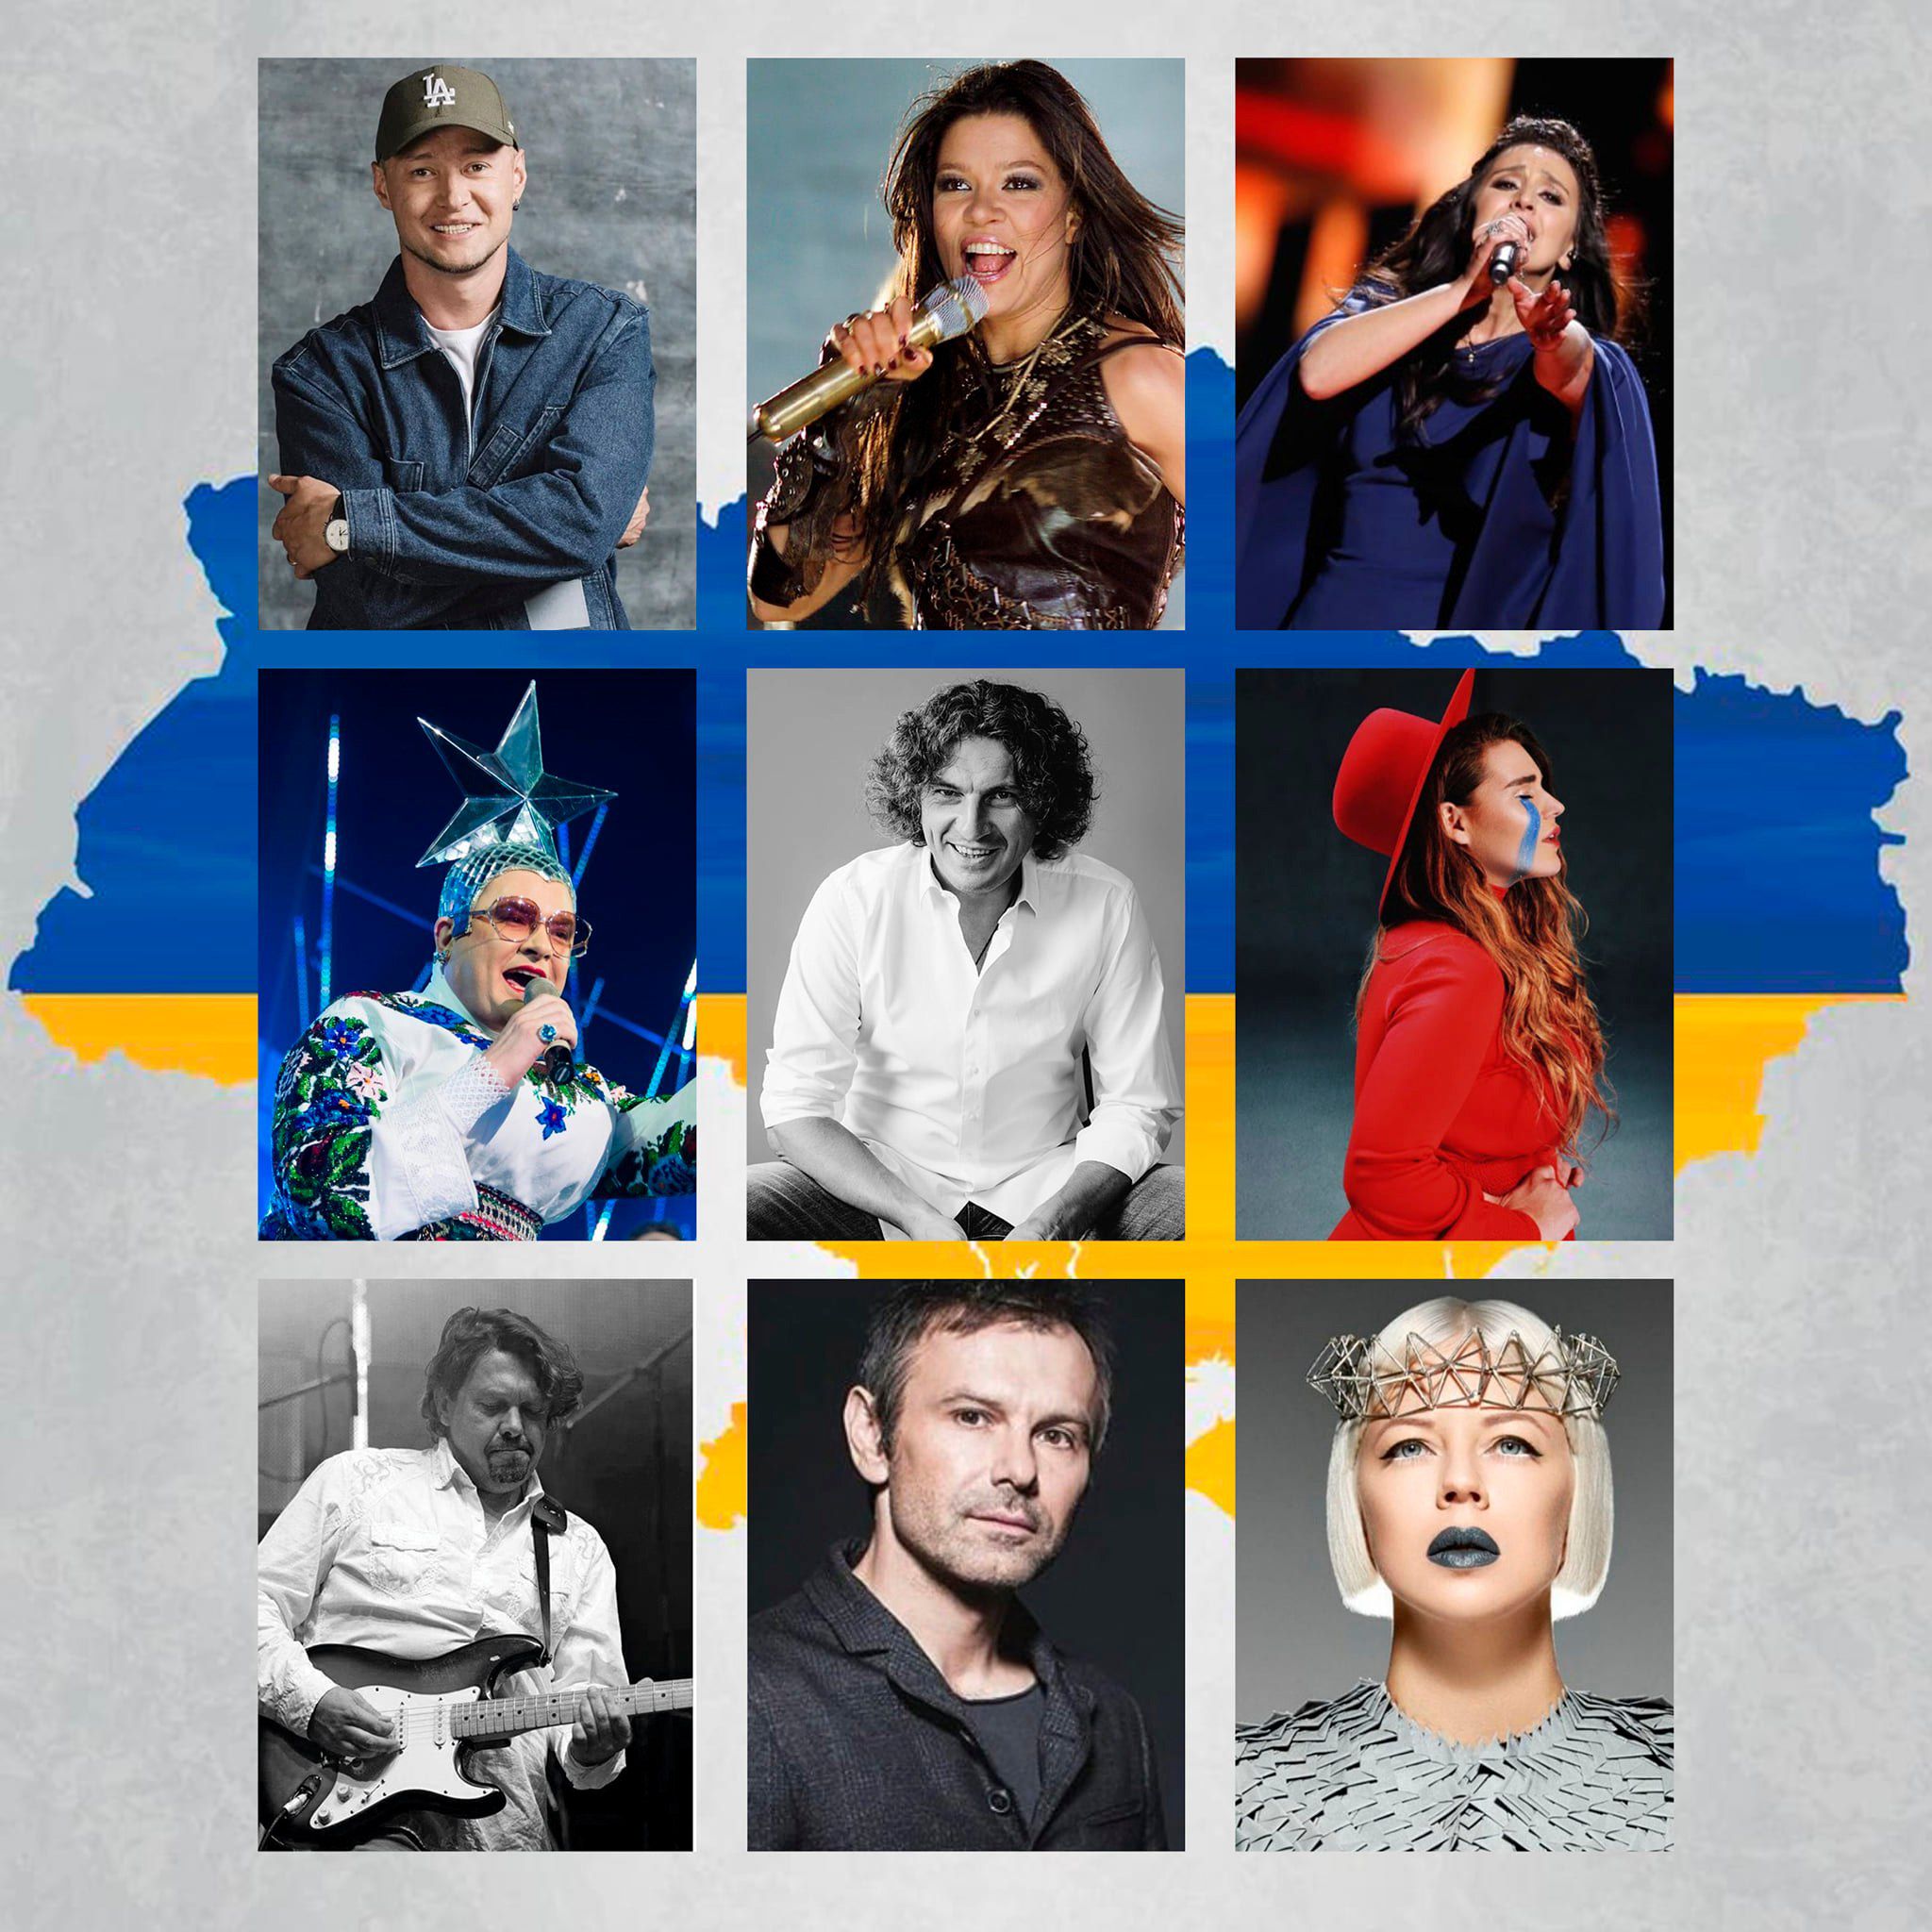 Кожна нова година на європейських радіостанціях розпочинатиметься з української пісні